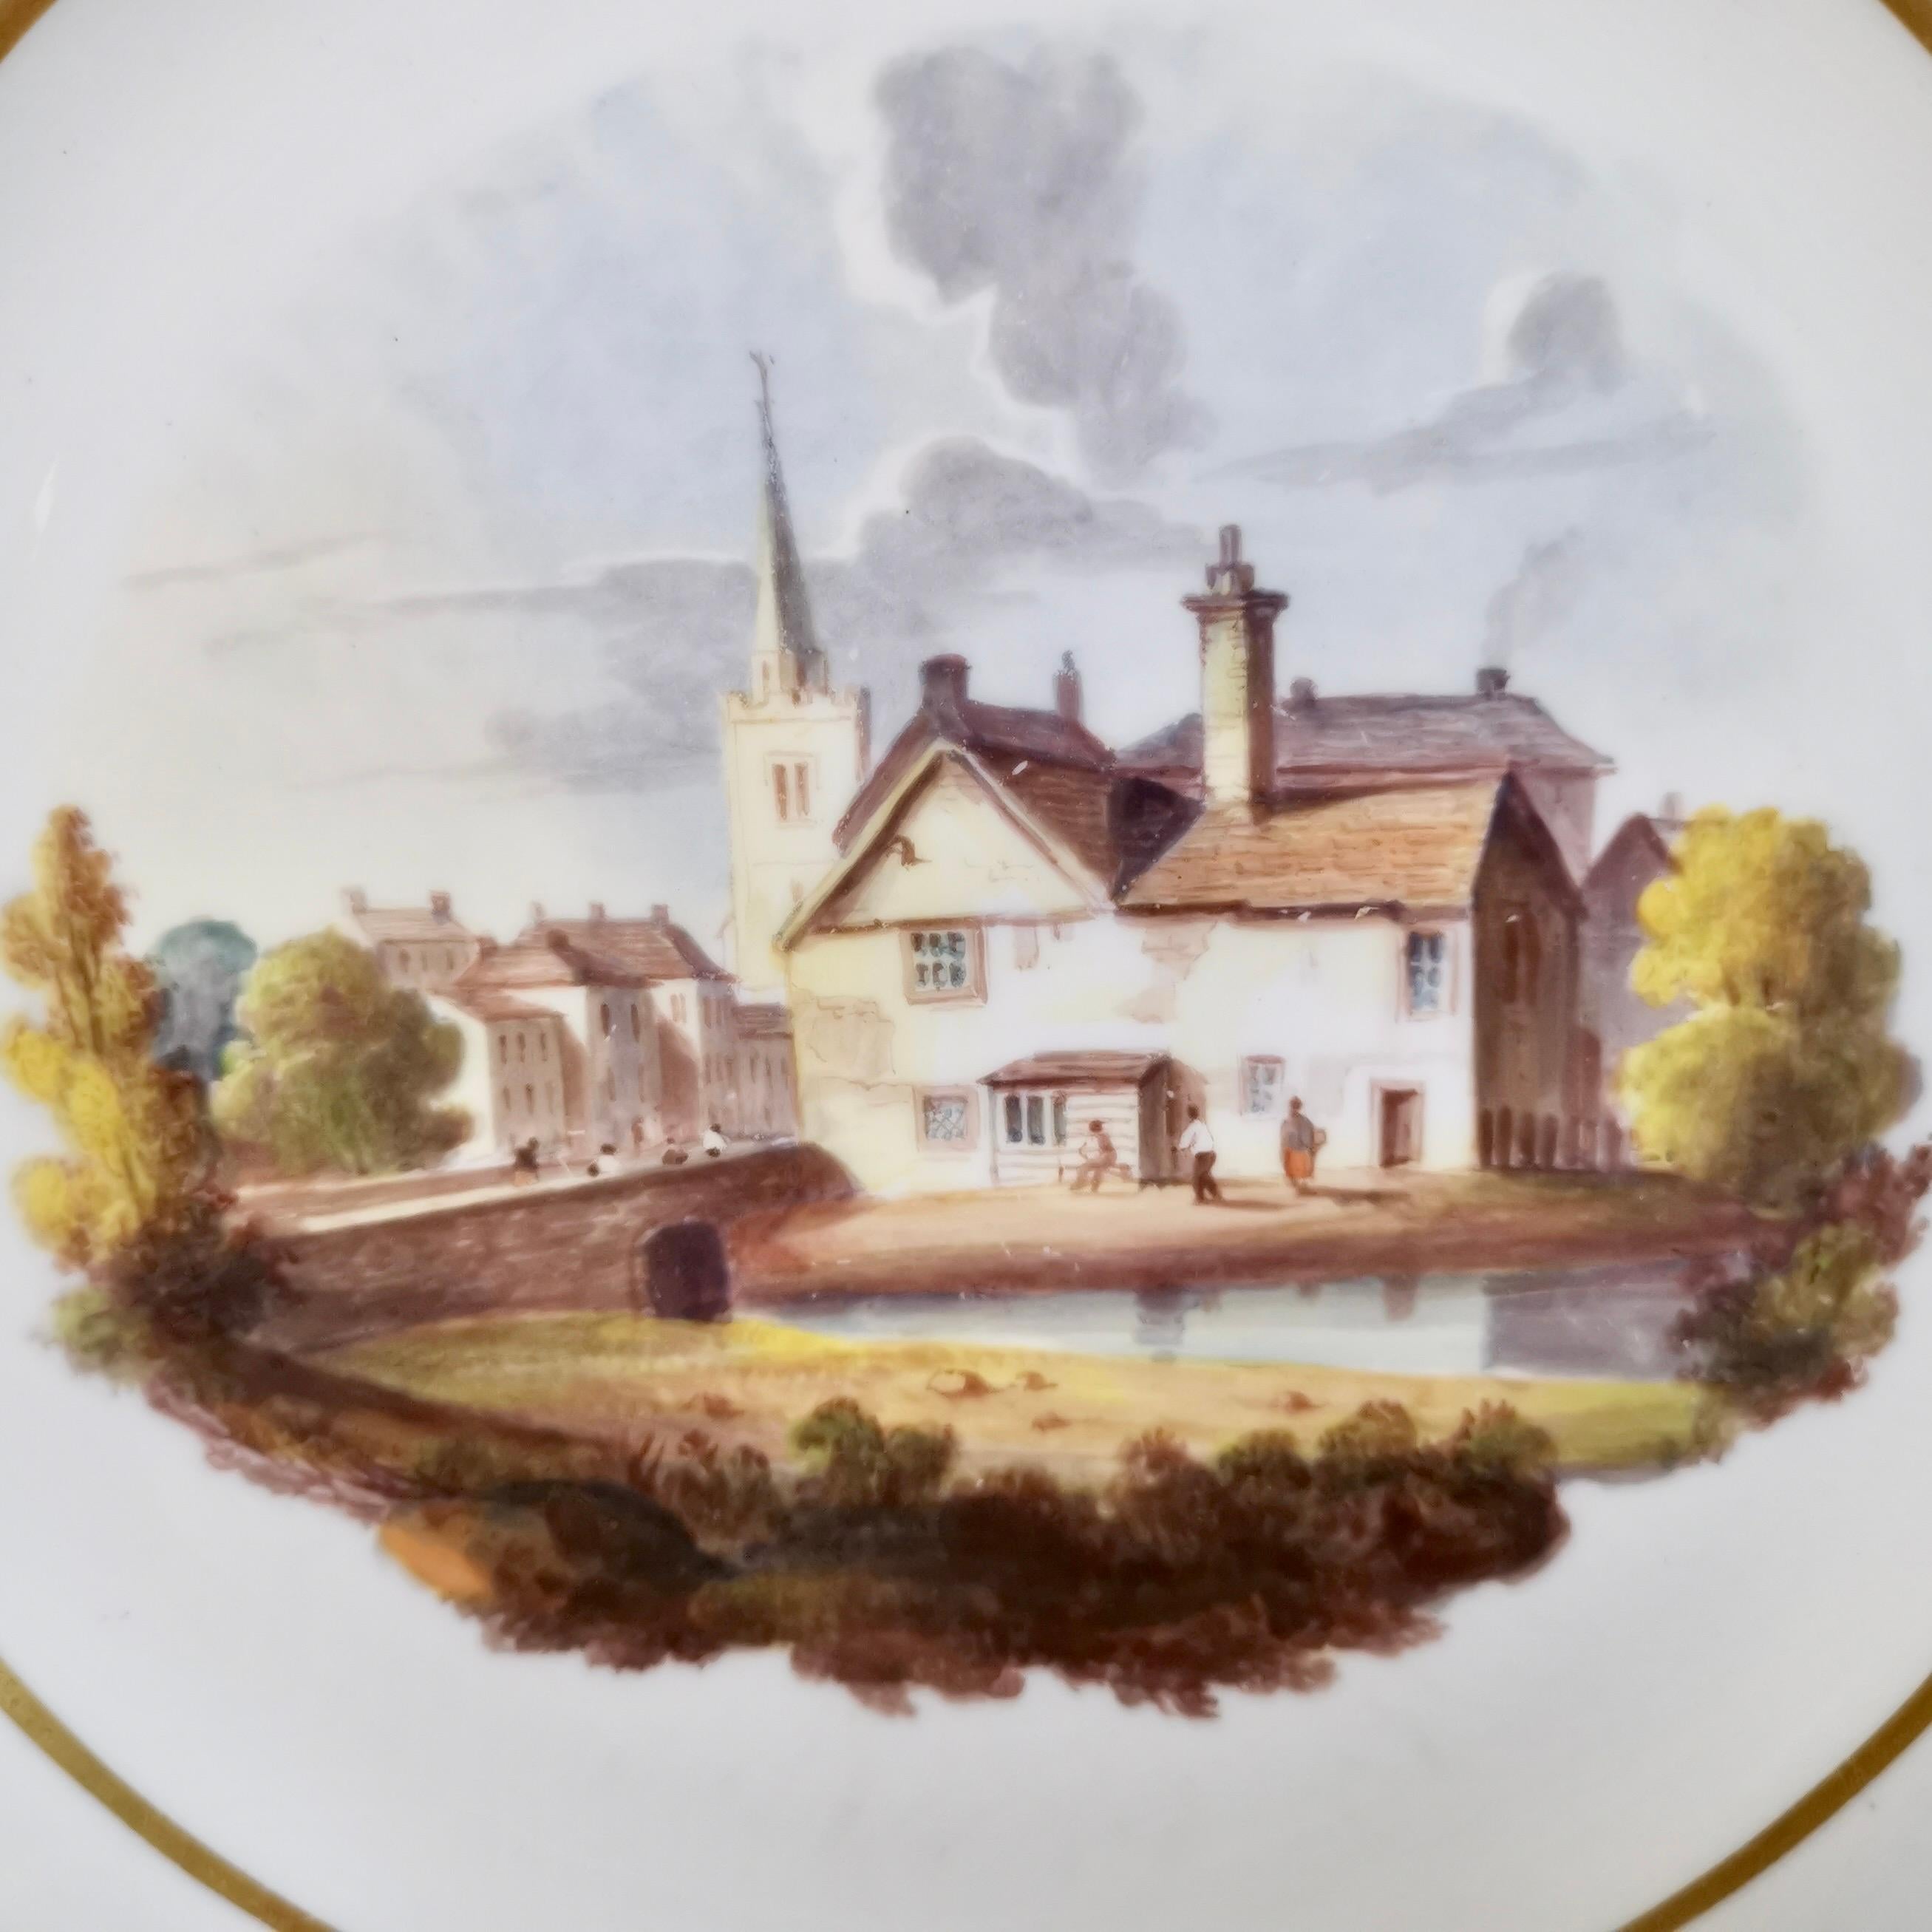 Dies ist ein Dessertteller von Spode aus dem Jahr 1822, also aus der Regency-Zeit. Der Teller ist aus Felspar-Porzellan gefertigt und mit einer schönen handgemalten Landschaftsszene verziert. Der Teller gehörte wohl zu einem großen Dessertservice,